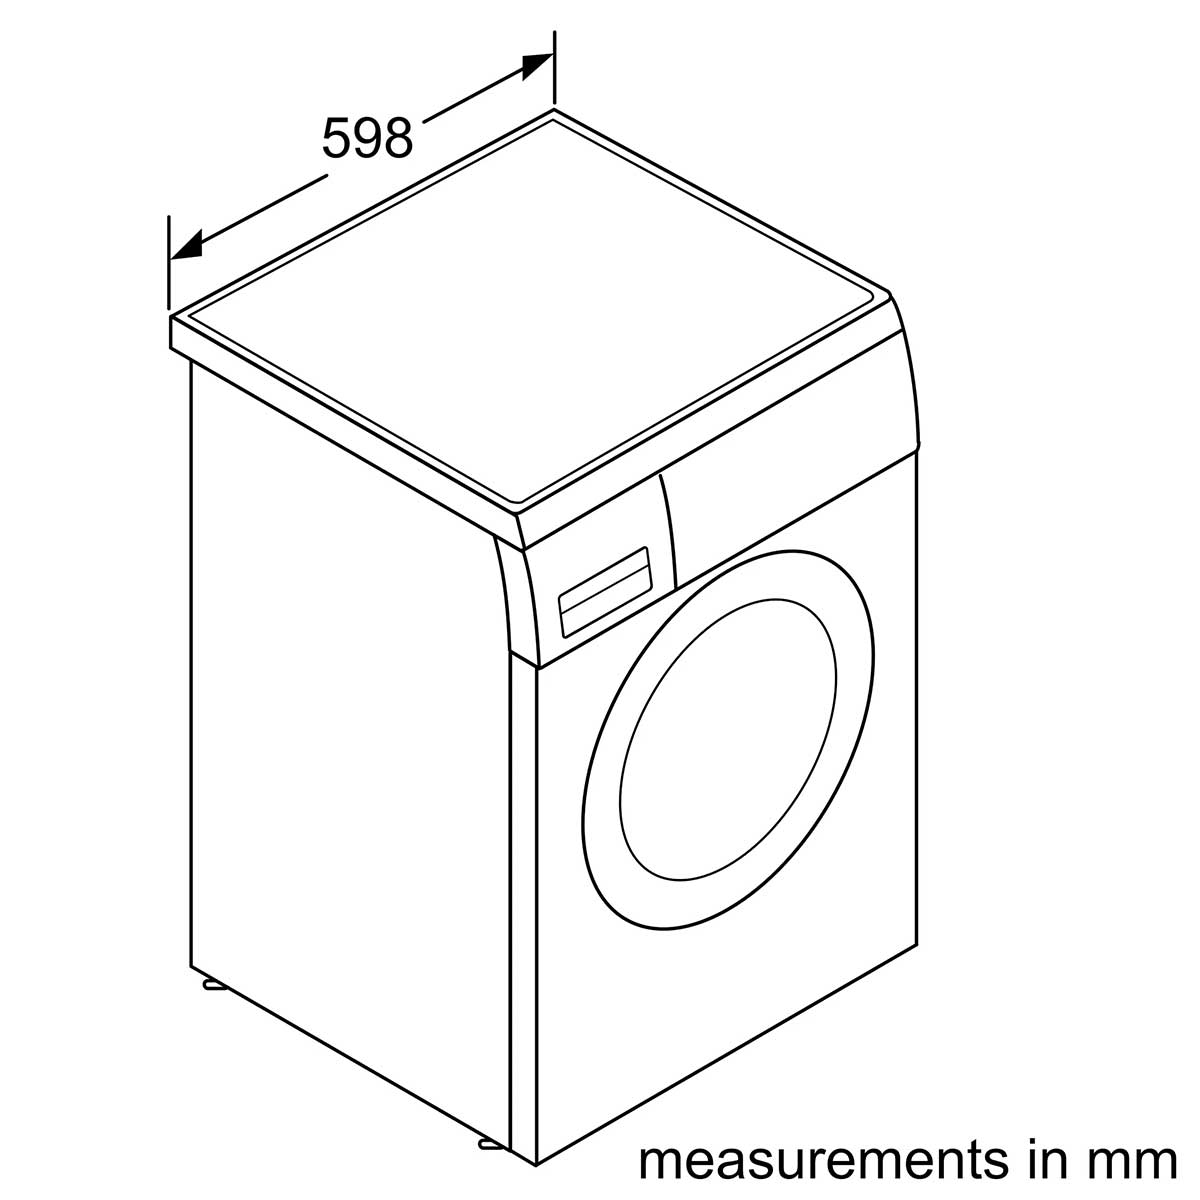 Bosch 博世 WUU2846BHK 8.0公斤 1400轉 前置式洗衣機 (已飛頂) - ShineCreation 創暉百貨